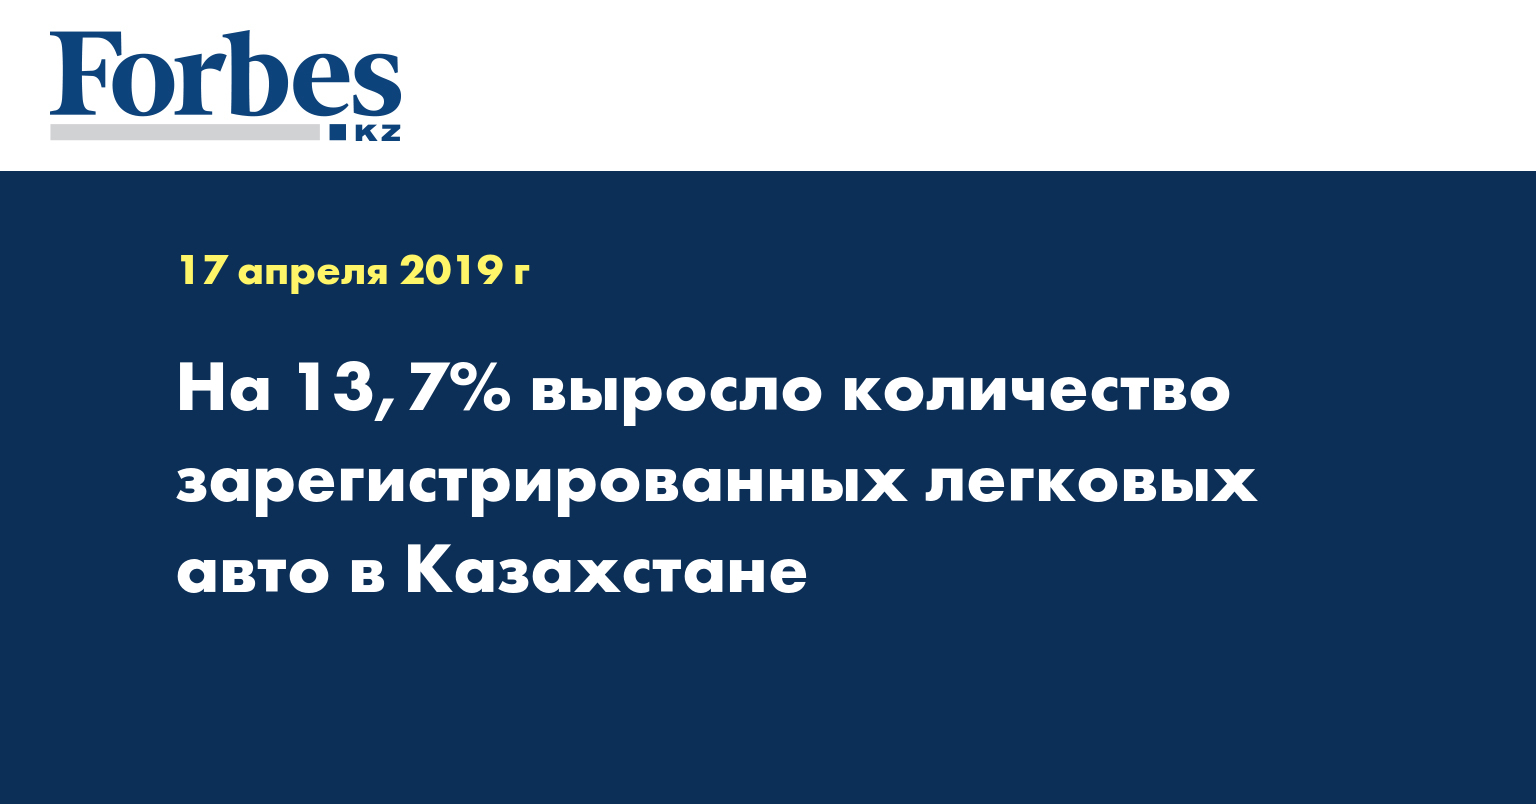 На 13,7% выросло количество зарегистрированных легковых авто в Казахстане